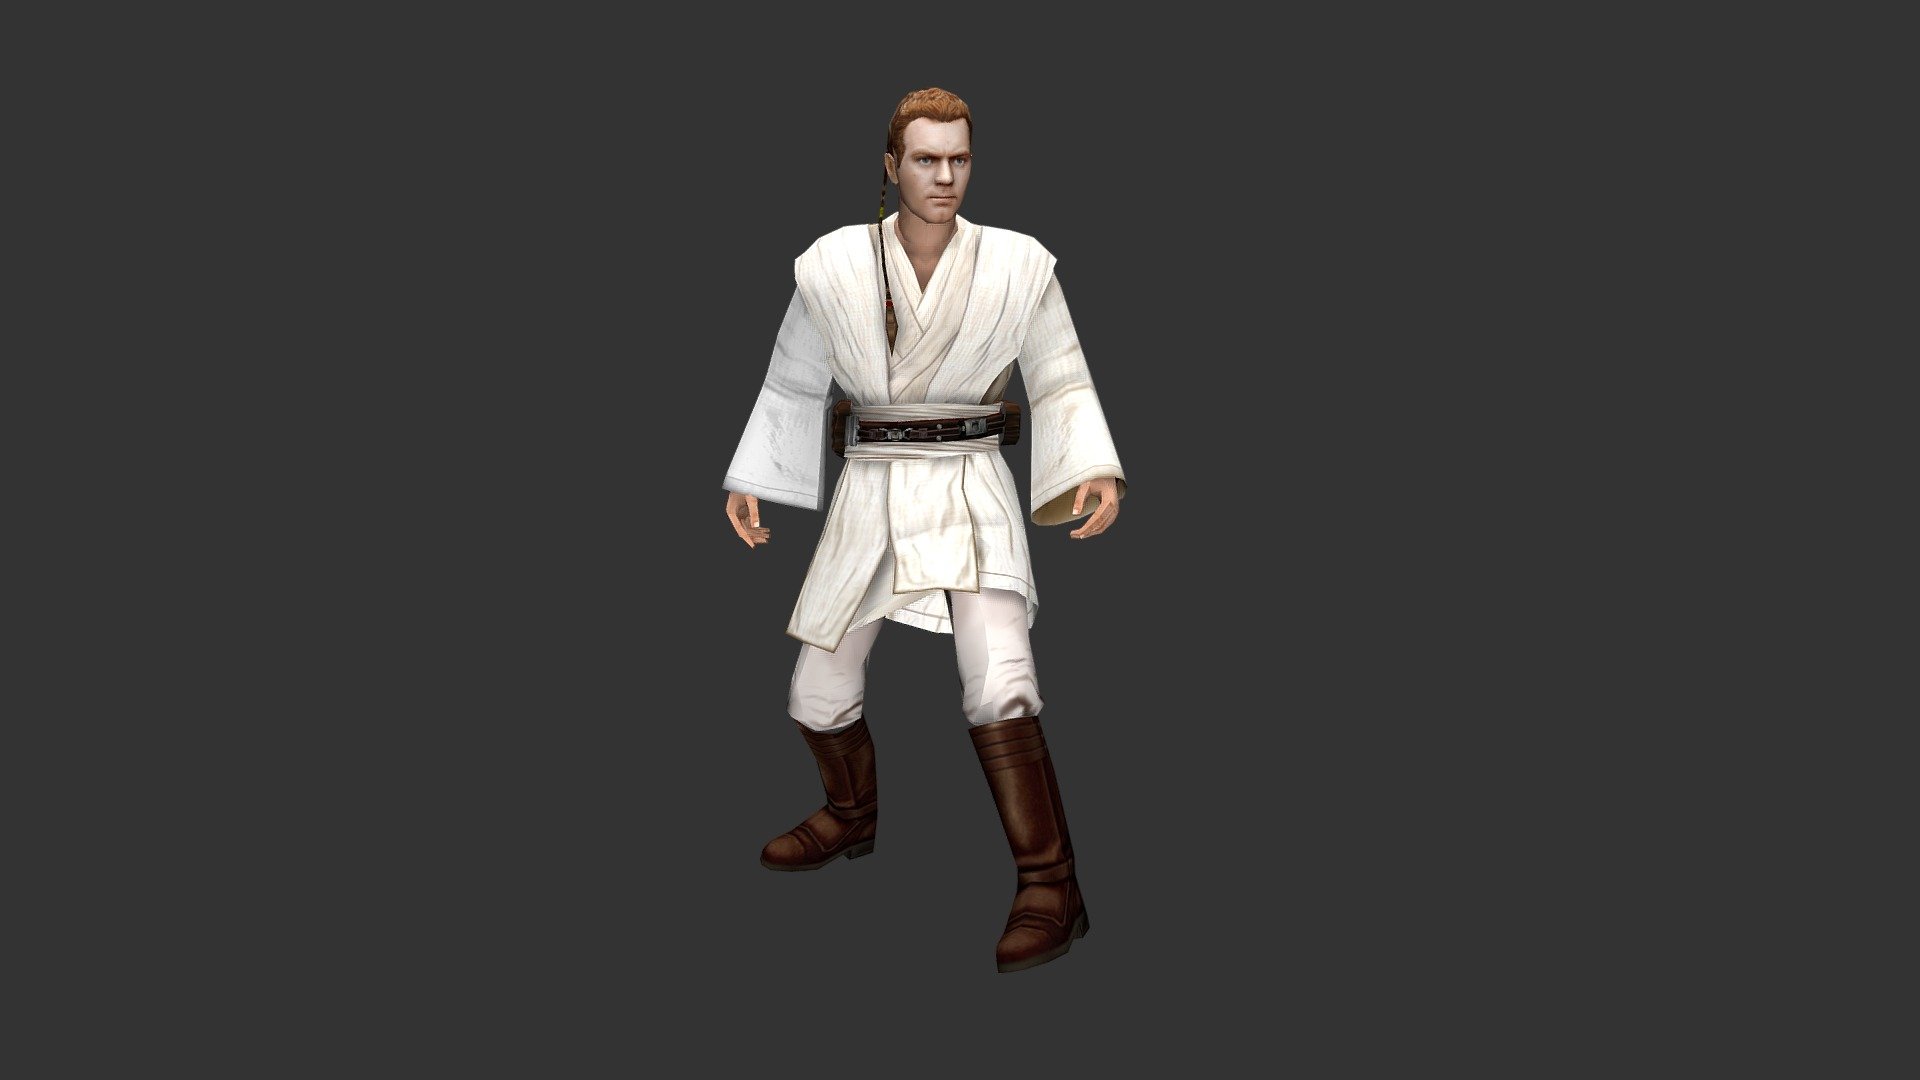 Obi-Wan Kenobi - The Phantom Menace